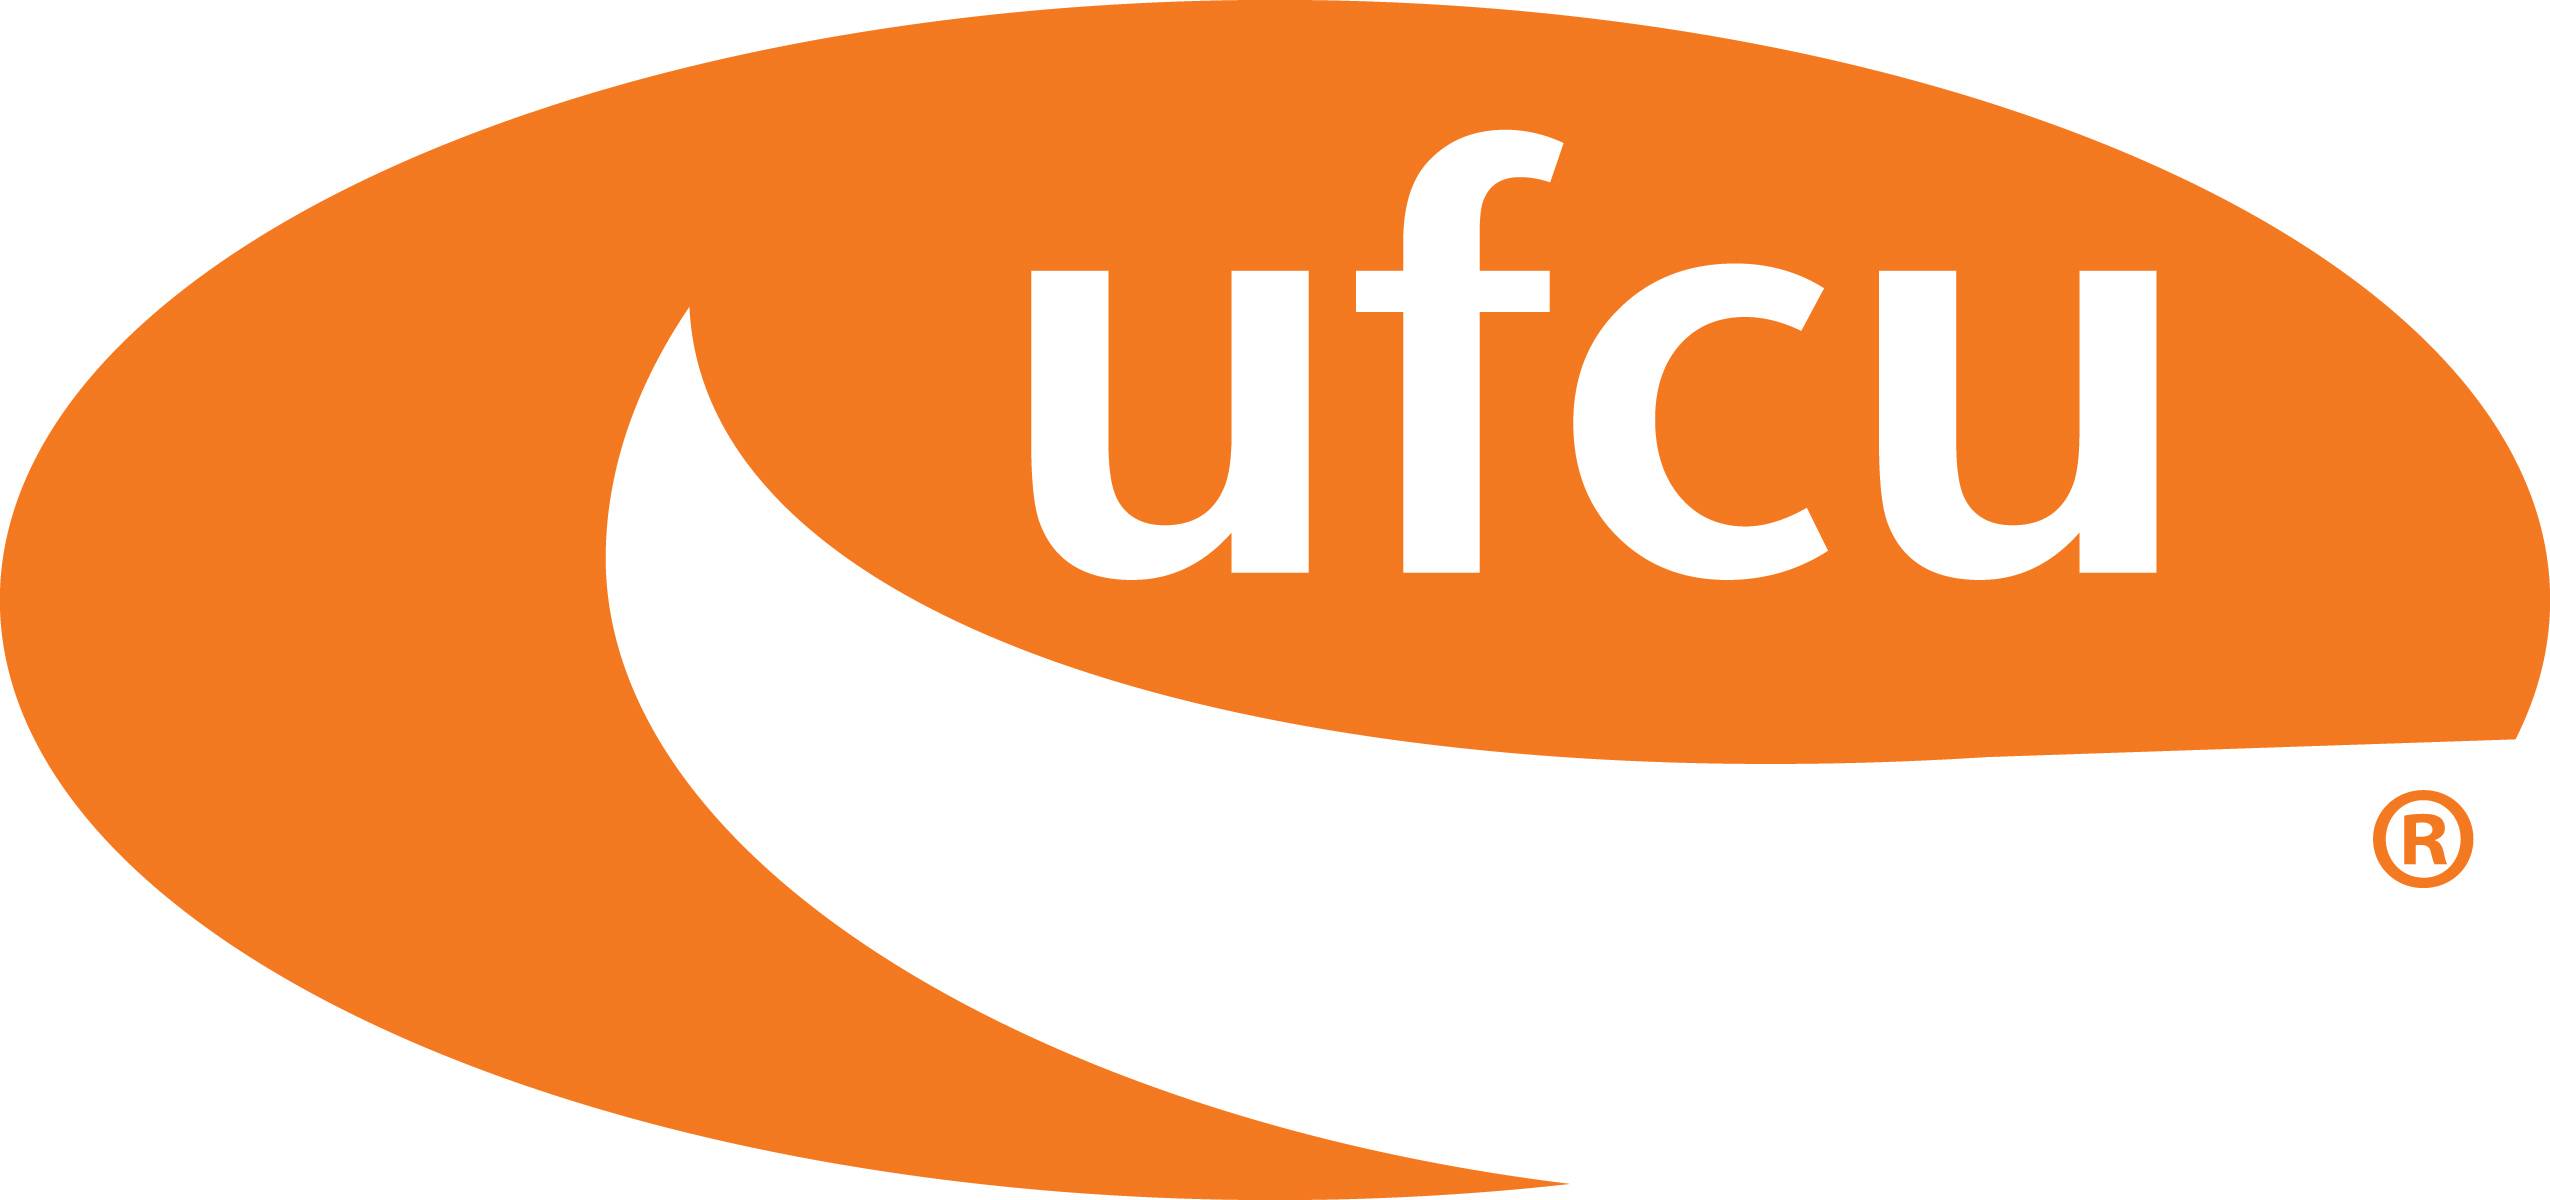 UFCU logo